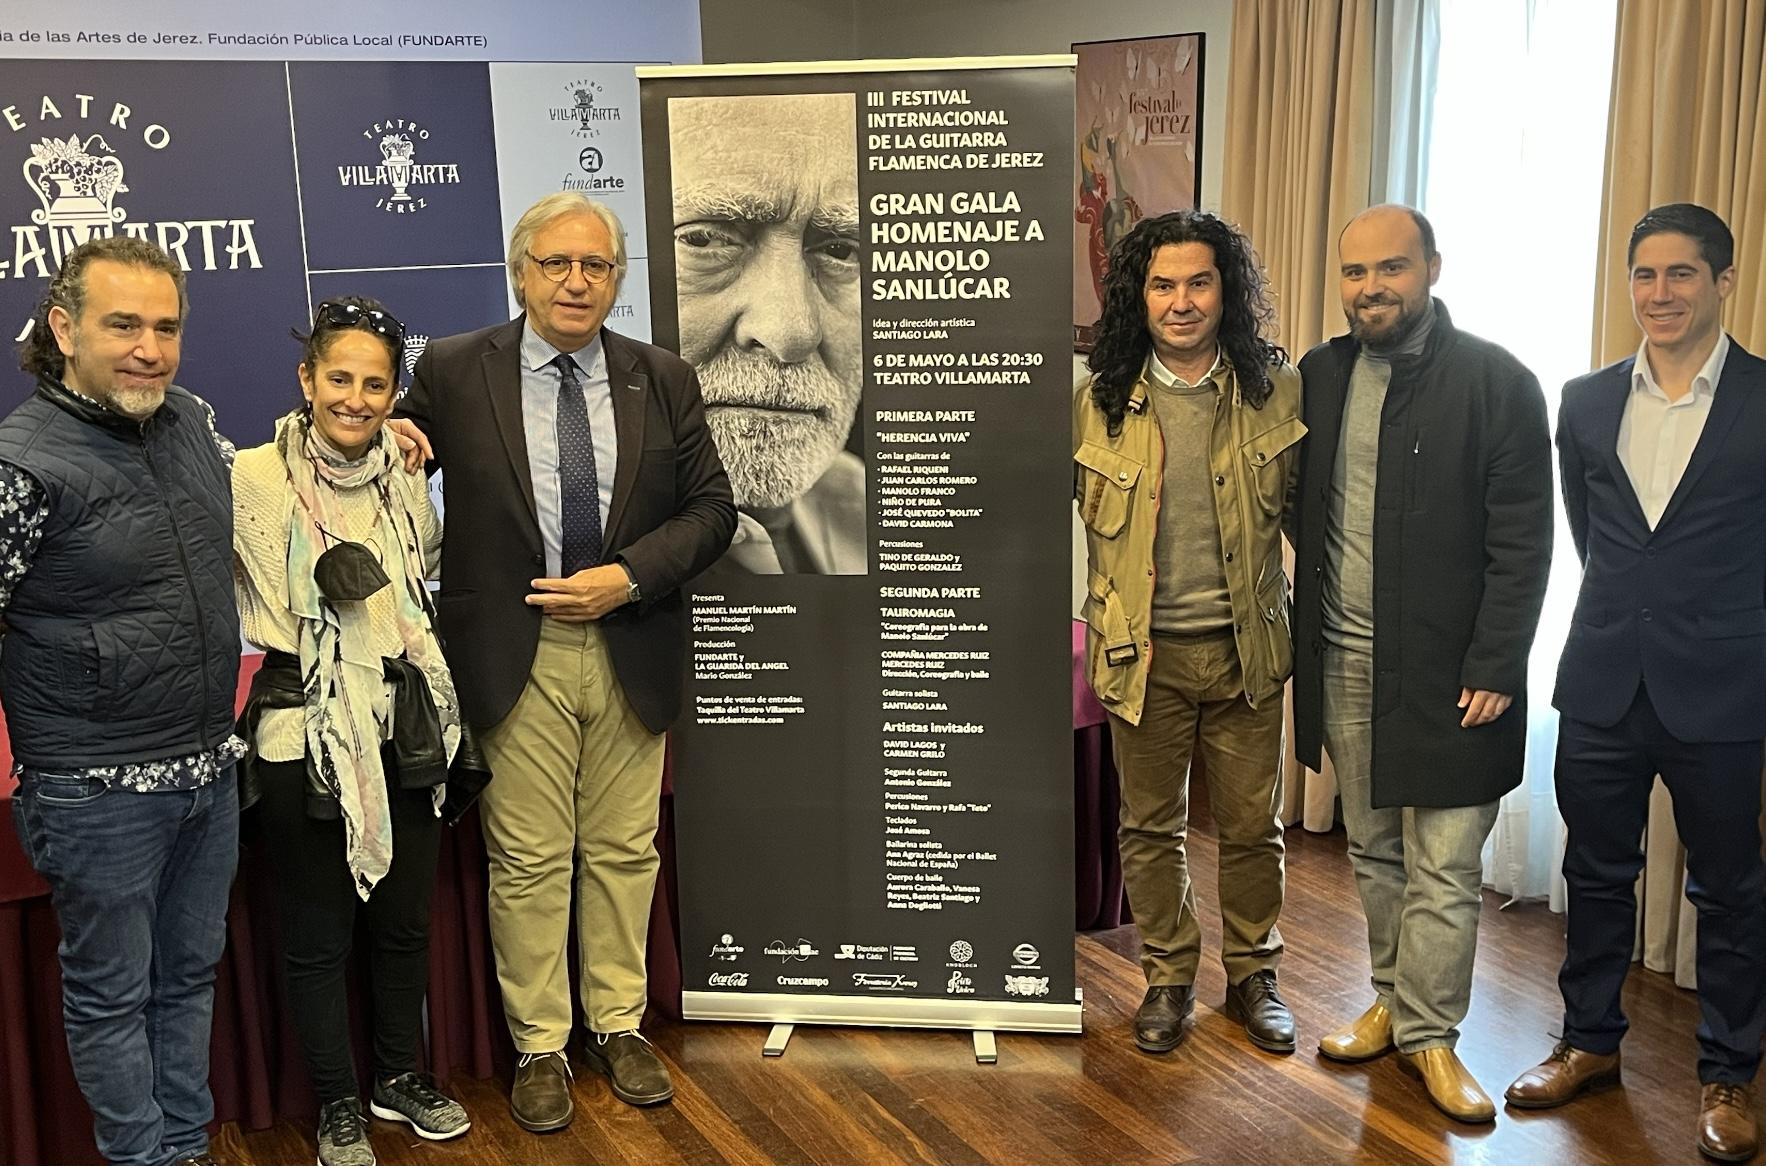 El III Festival Internacional de la Guitarra de Jerez rinde homenaje a Manolo Sanlúcar en el Villamarta